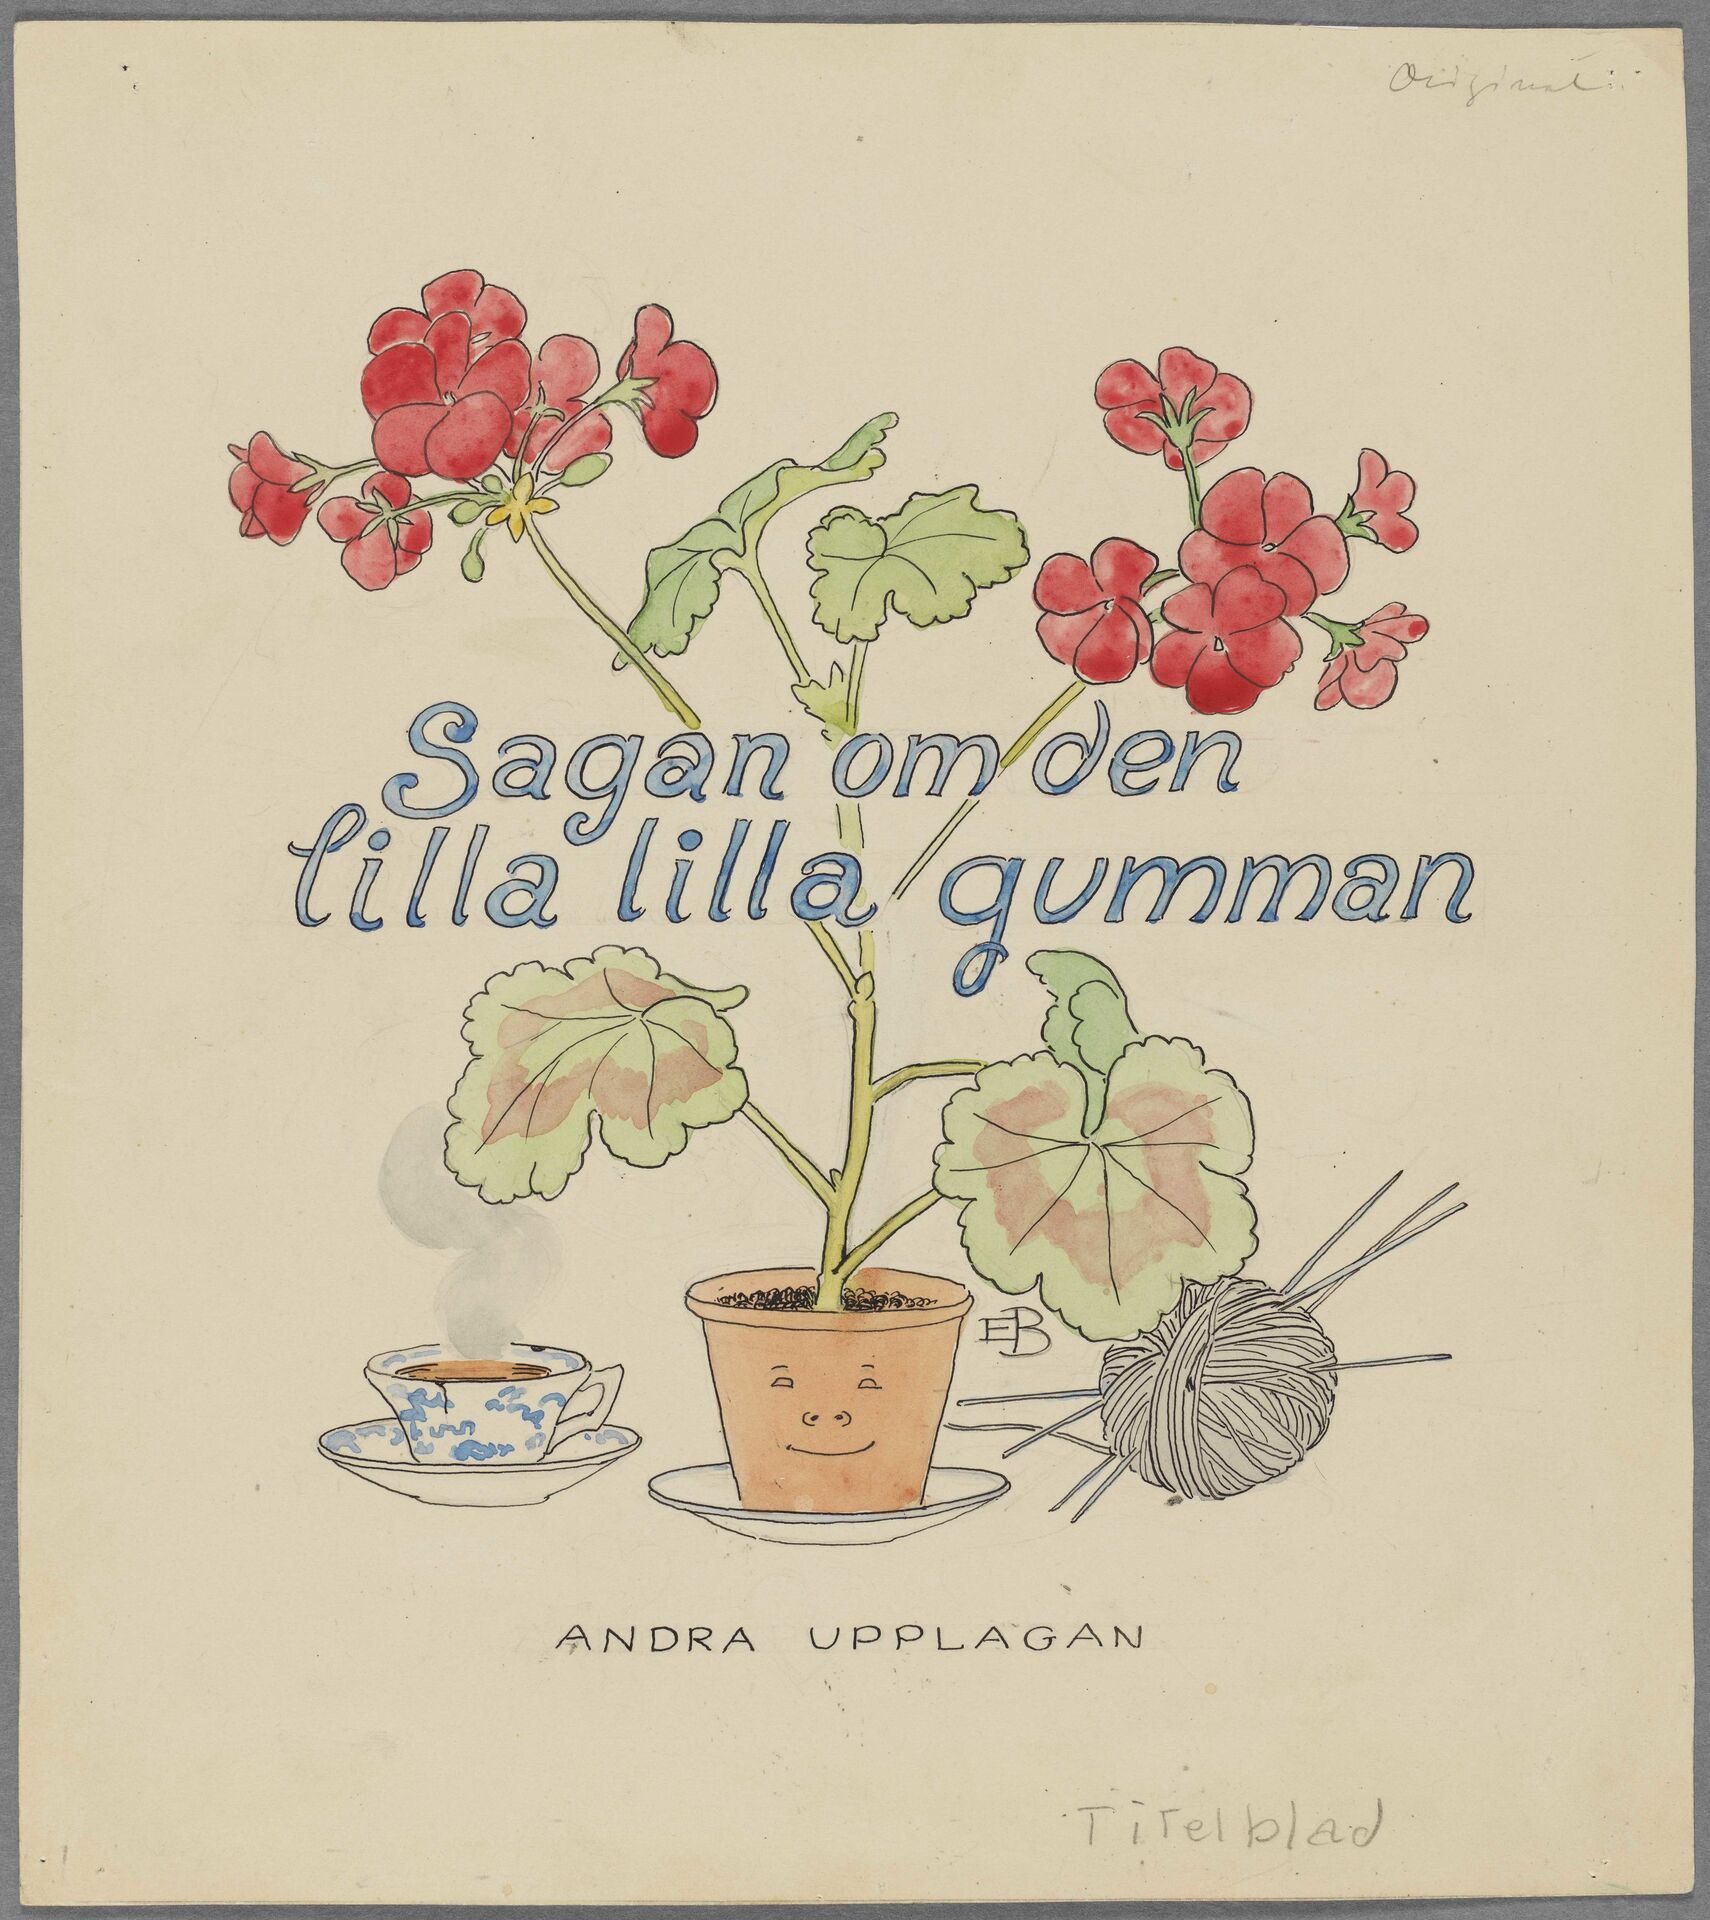 Titelblad till Elsa Beskow, Sagan om den lilla lilla gumman, med avbildad pelargon